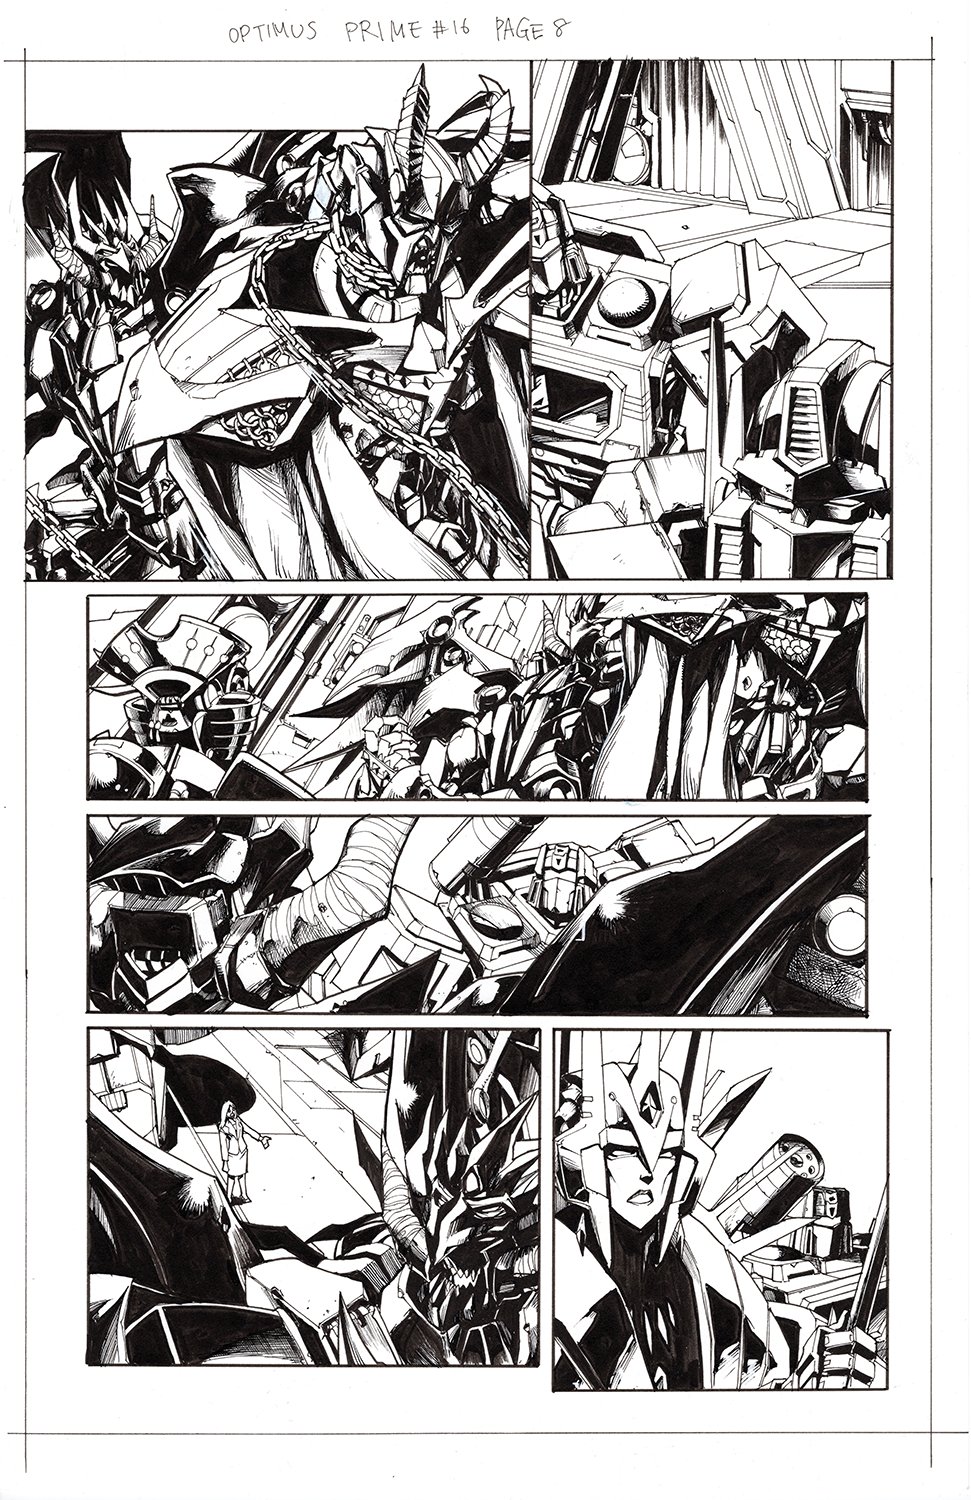 Optimus Prime #16 Page 08